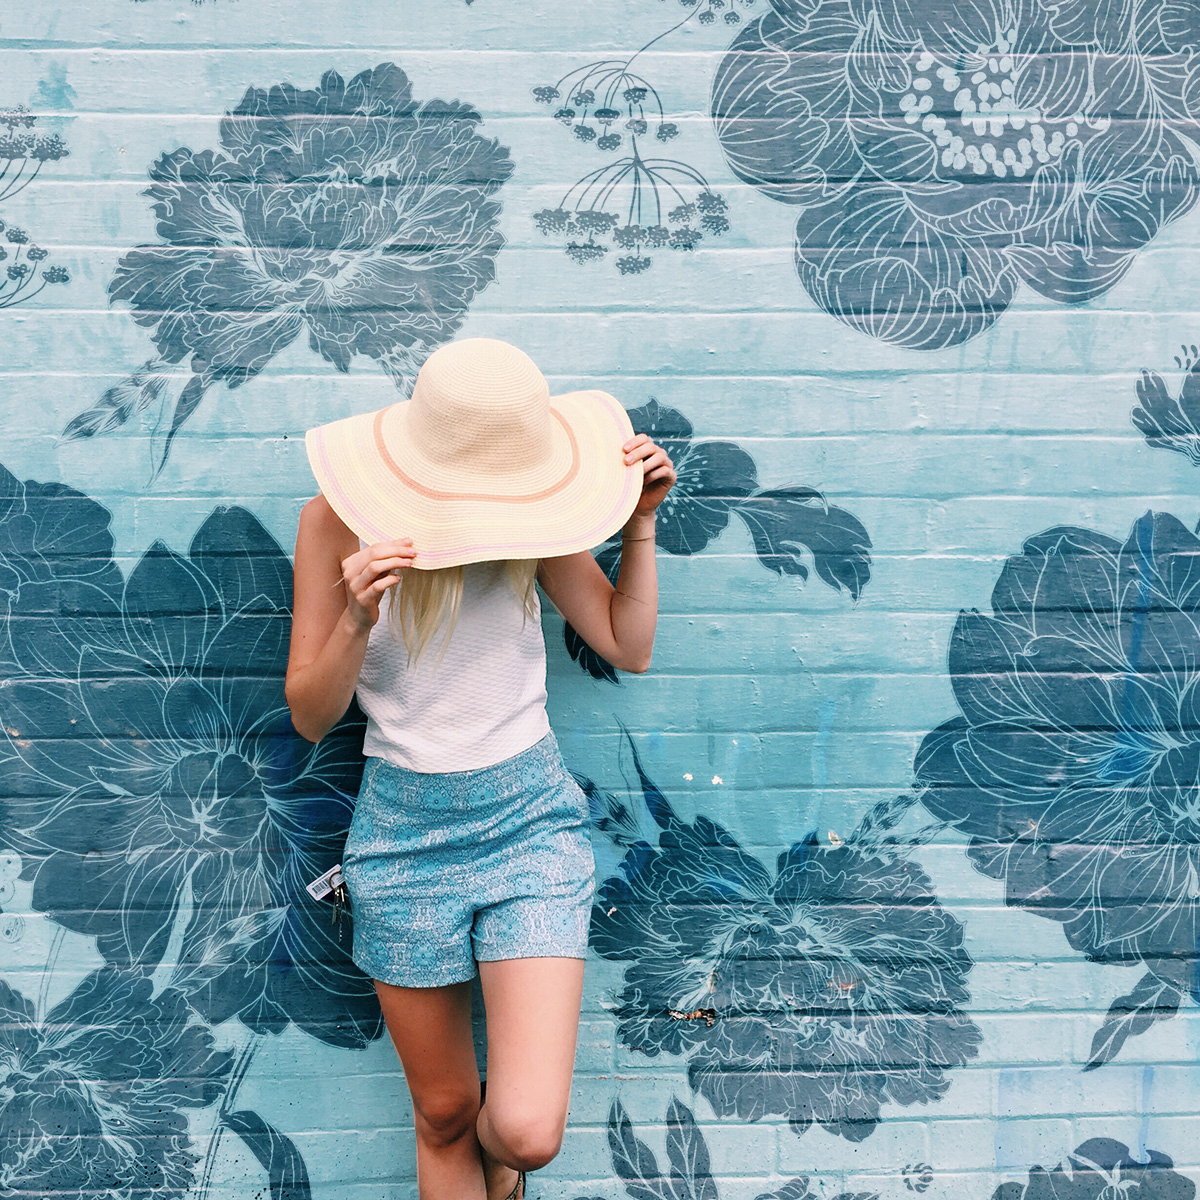 Lea outdoor wallpapers - UV resistant